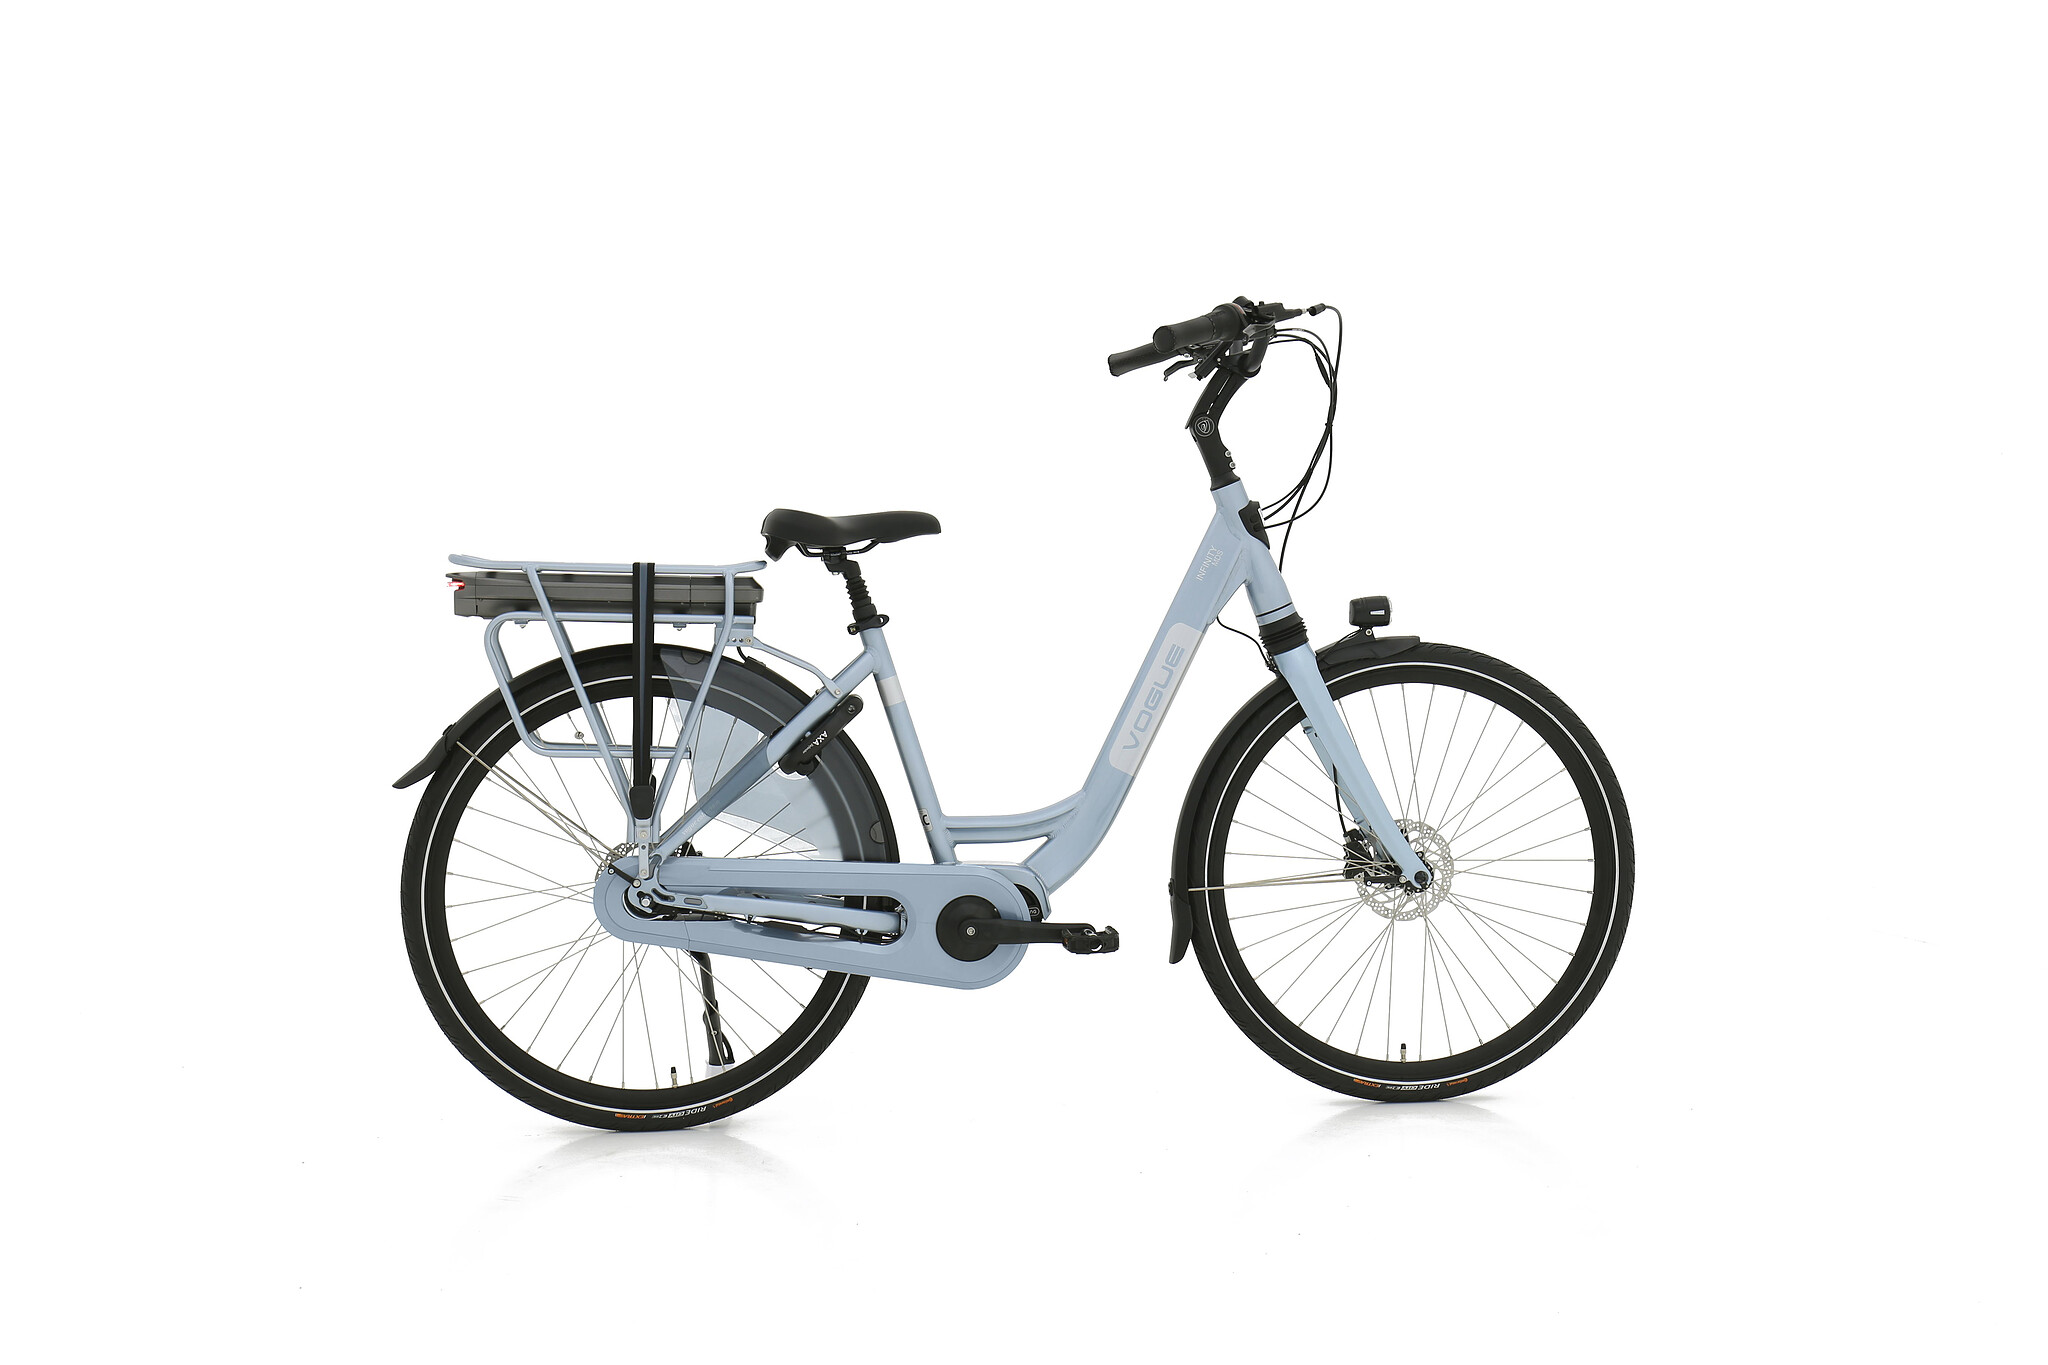 Vogue Elektrische fiets Infinity M300 Dames 53 cm Blauw 468 Wh Blauw